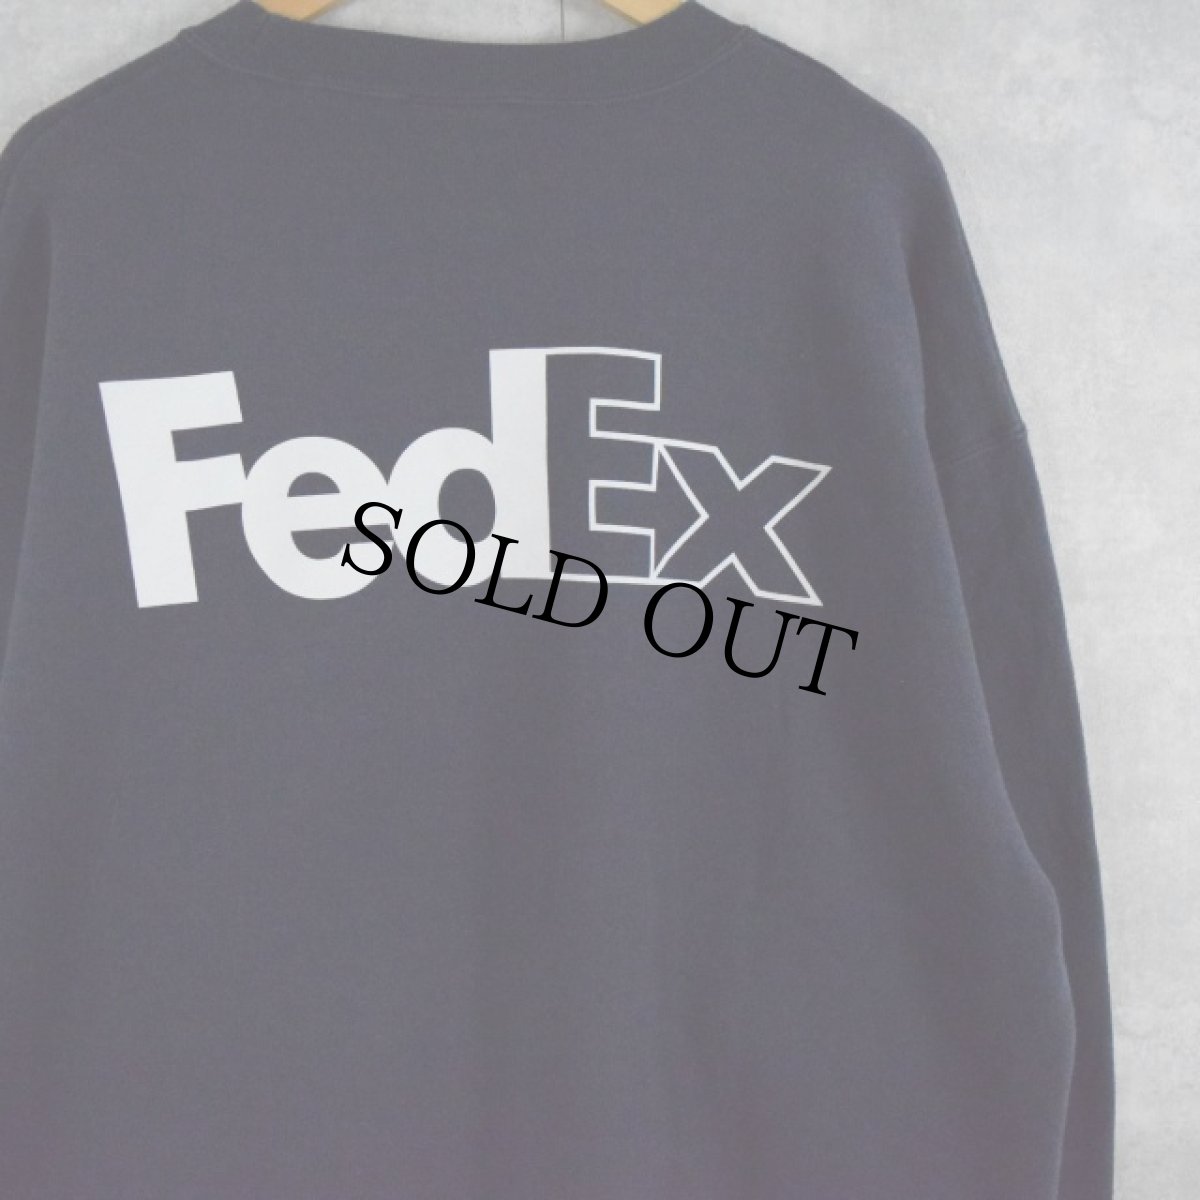 画像1: FedEx 企業ロゴプリントスウェット XL NAVY (1)